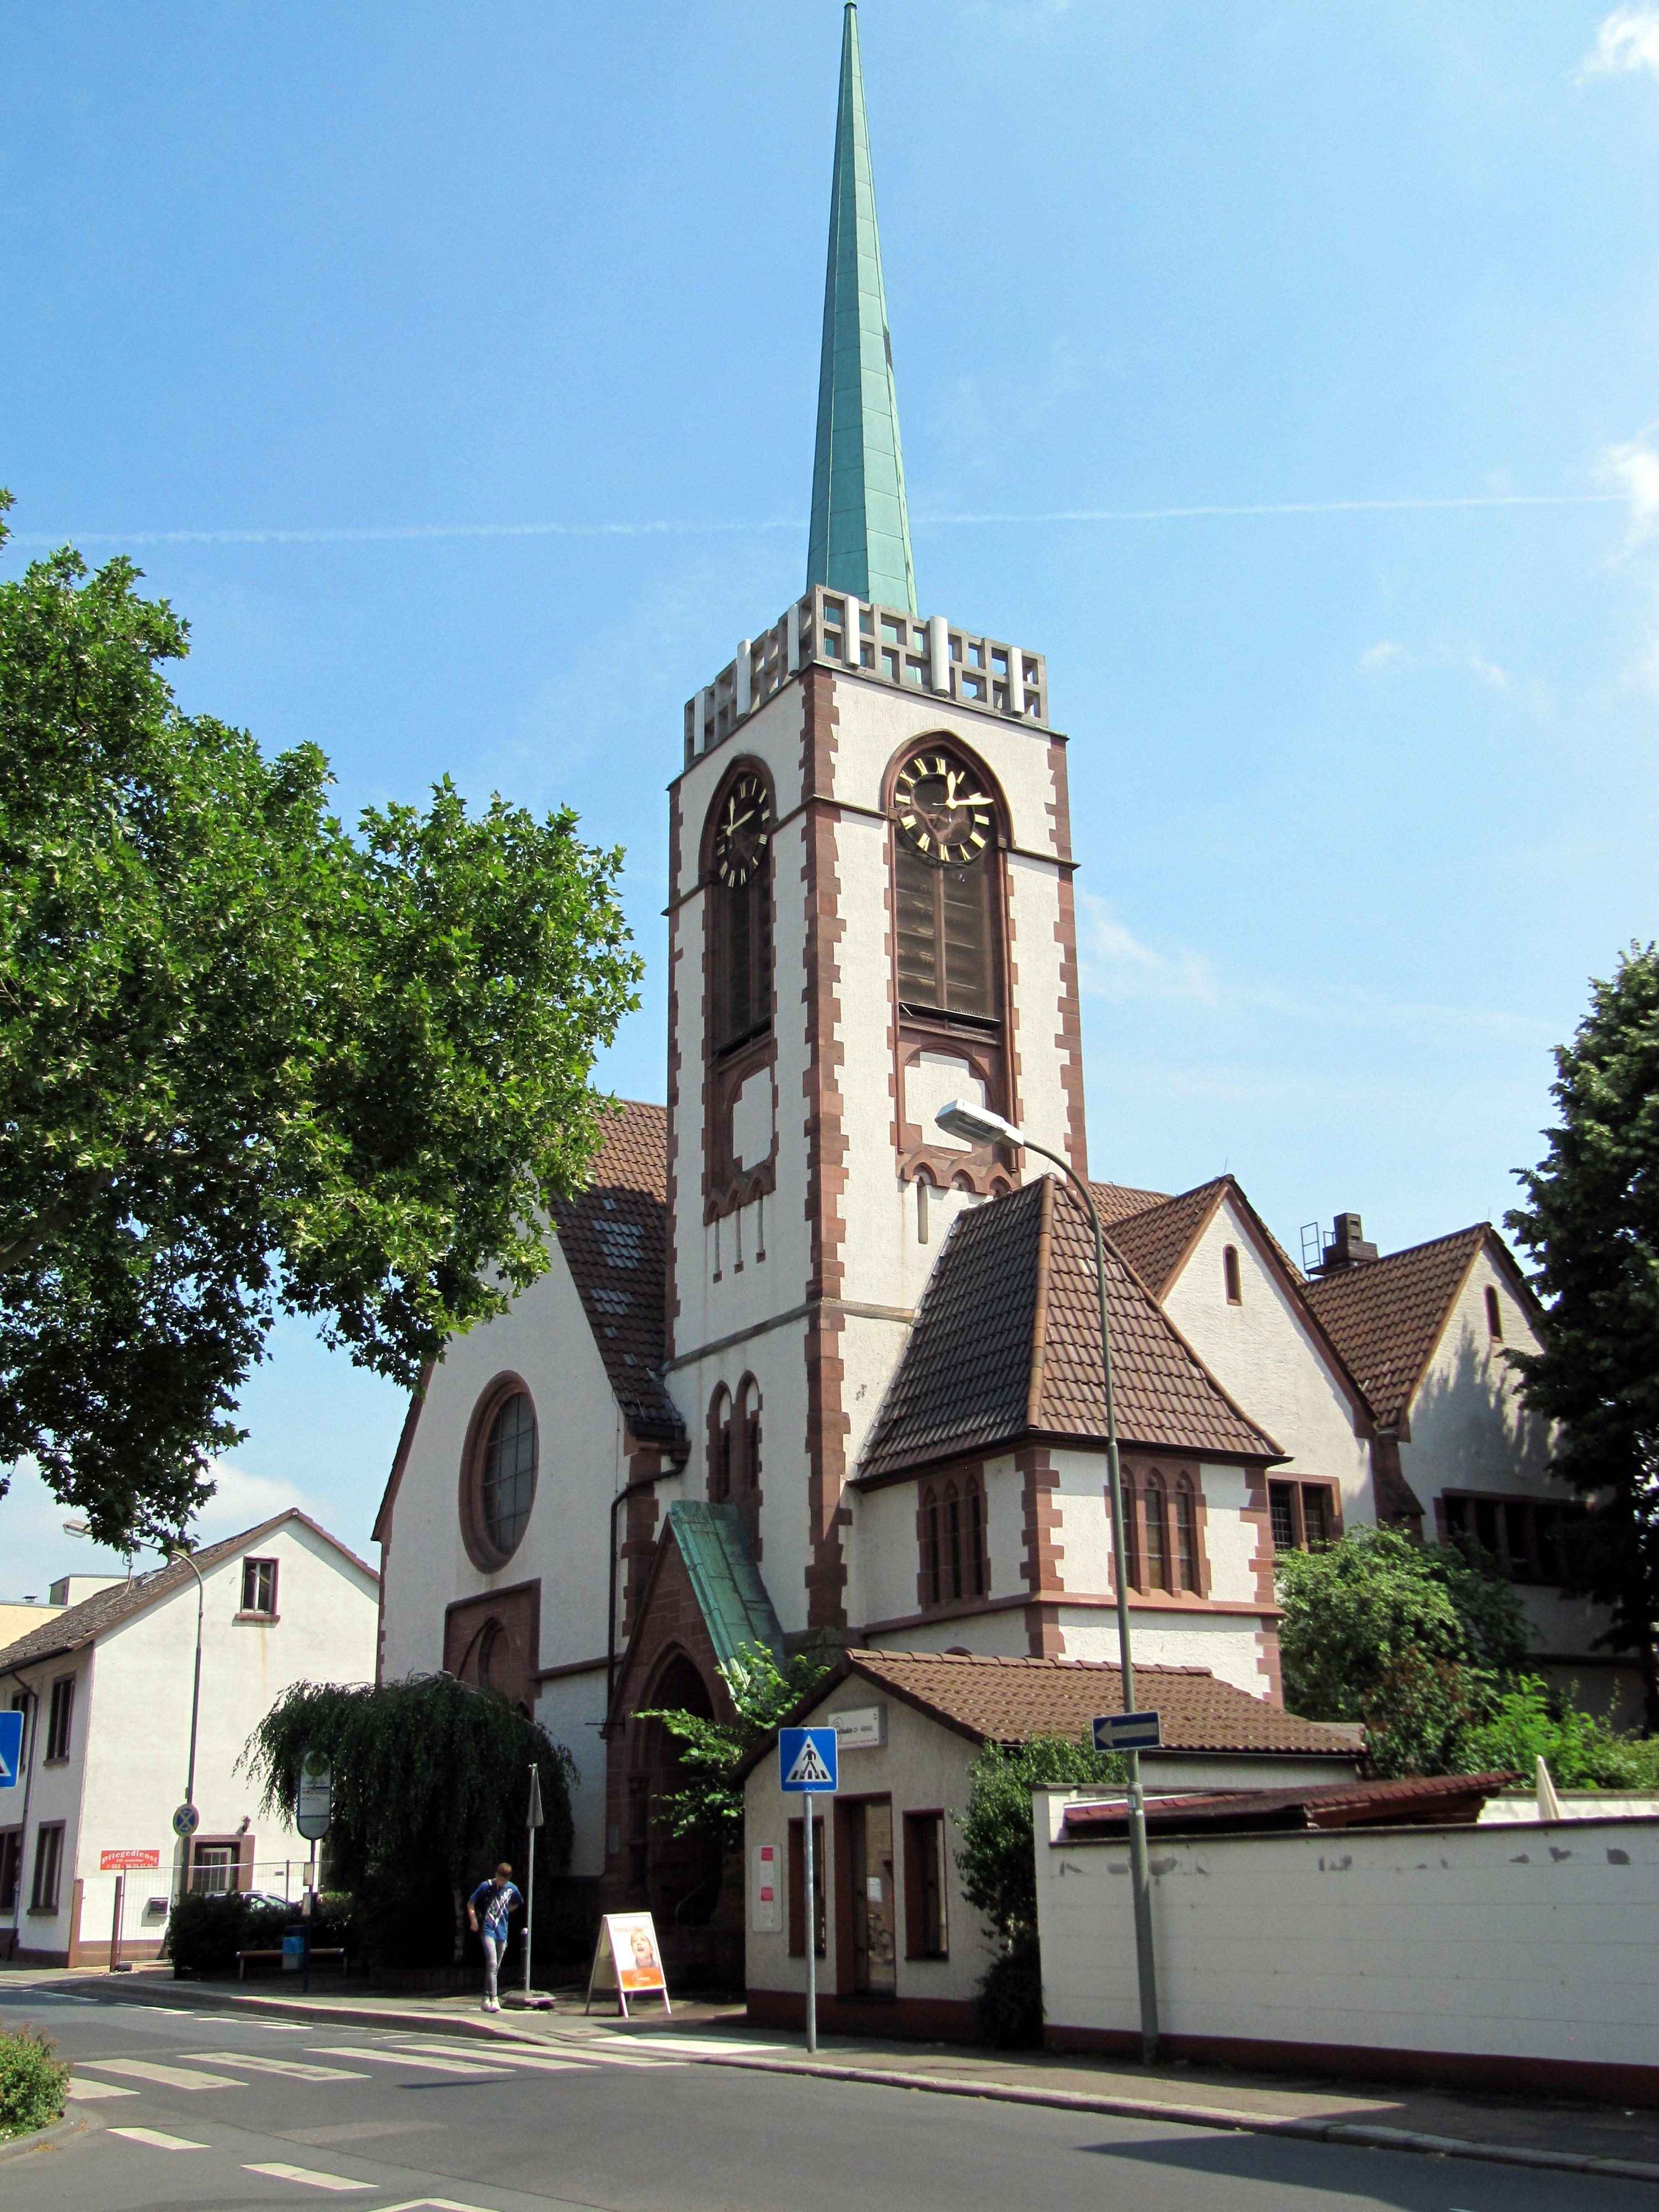 Seit 1920 trägt das evangelische Gotteshaus gleich am Ortseingang von Bürgel den Namen "Gustav-Adolf-Kirche". Im Jahre 1903 erbaut, prägt es mit seinem spitzen Turm und dem Sandsteinportal das Ortsbild. Im seit jeher katholisch geprägten Ort fanden die ev